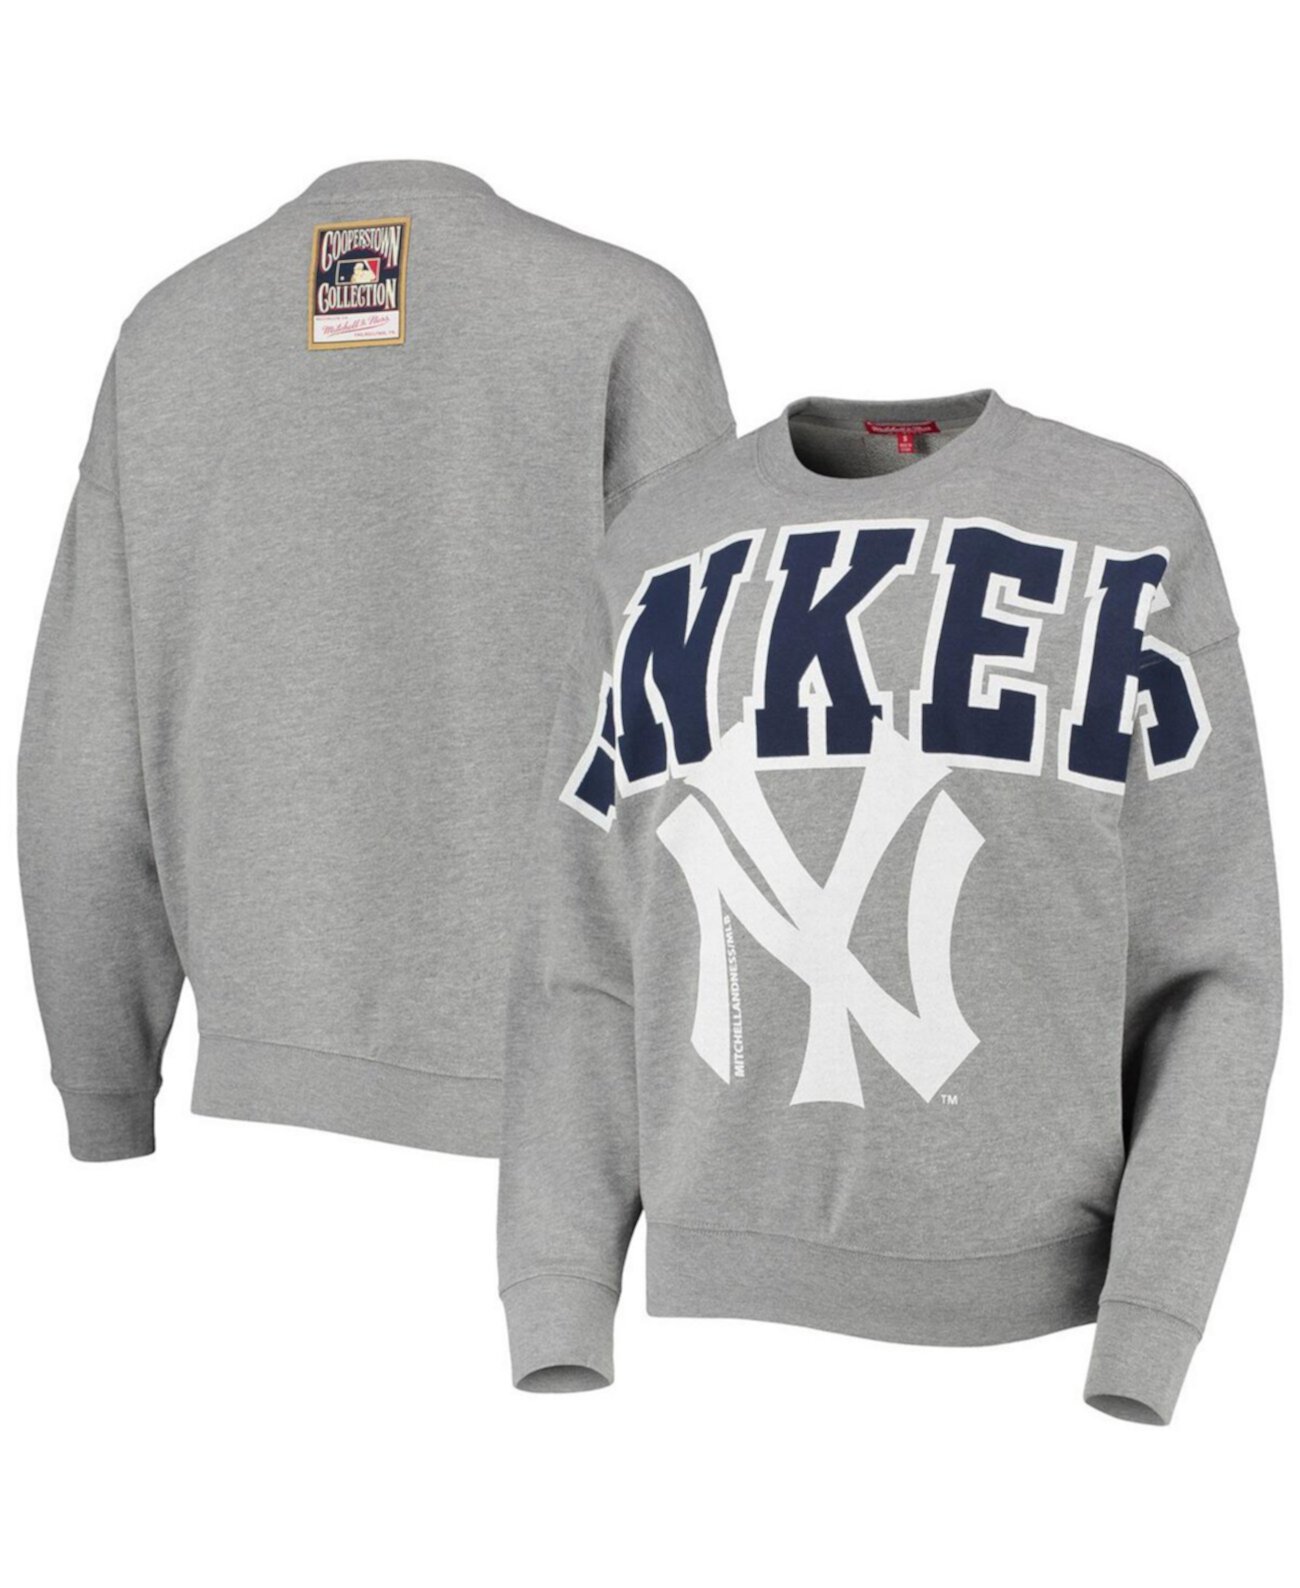 Легкий пуловер с логотипом из коллекции New York Yankees Cooperstown для женщин серого цвета с мелким принтом Mitchell & Ness